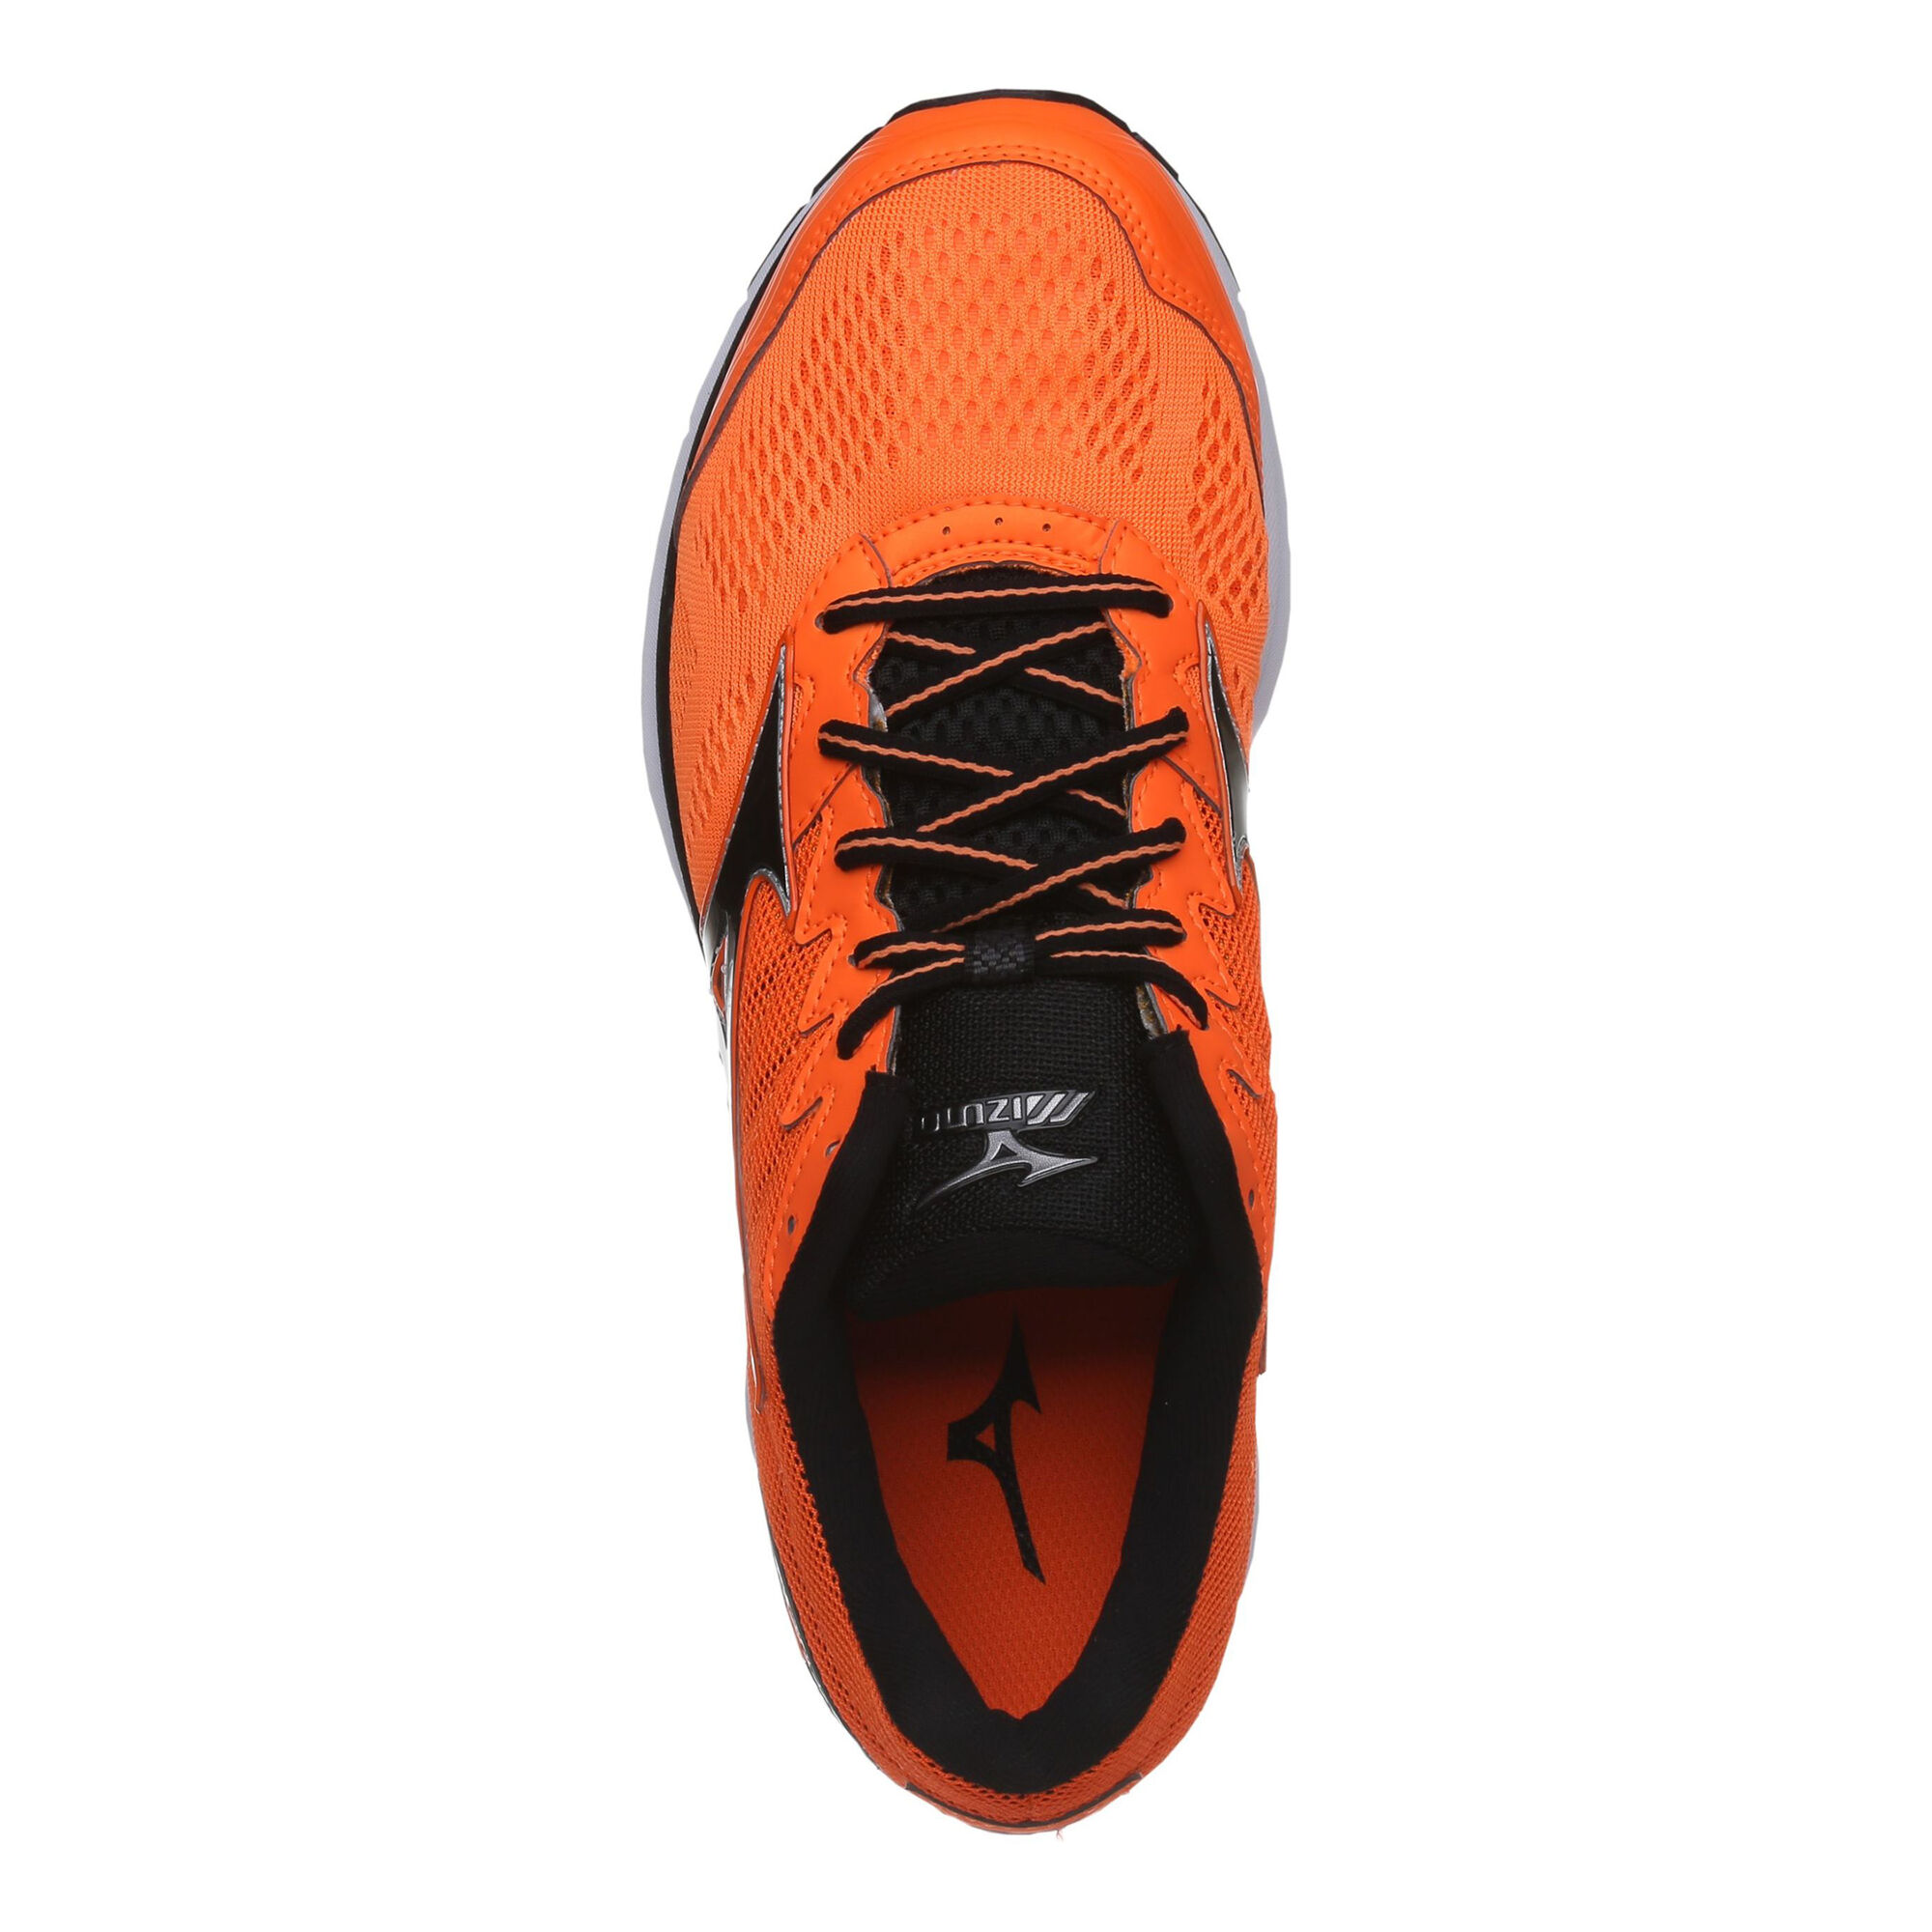 Buy Mizuno Wave Rider Neutral Running Shoe Men Orange Black Online Jogging Point